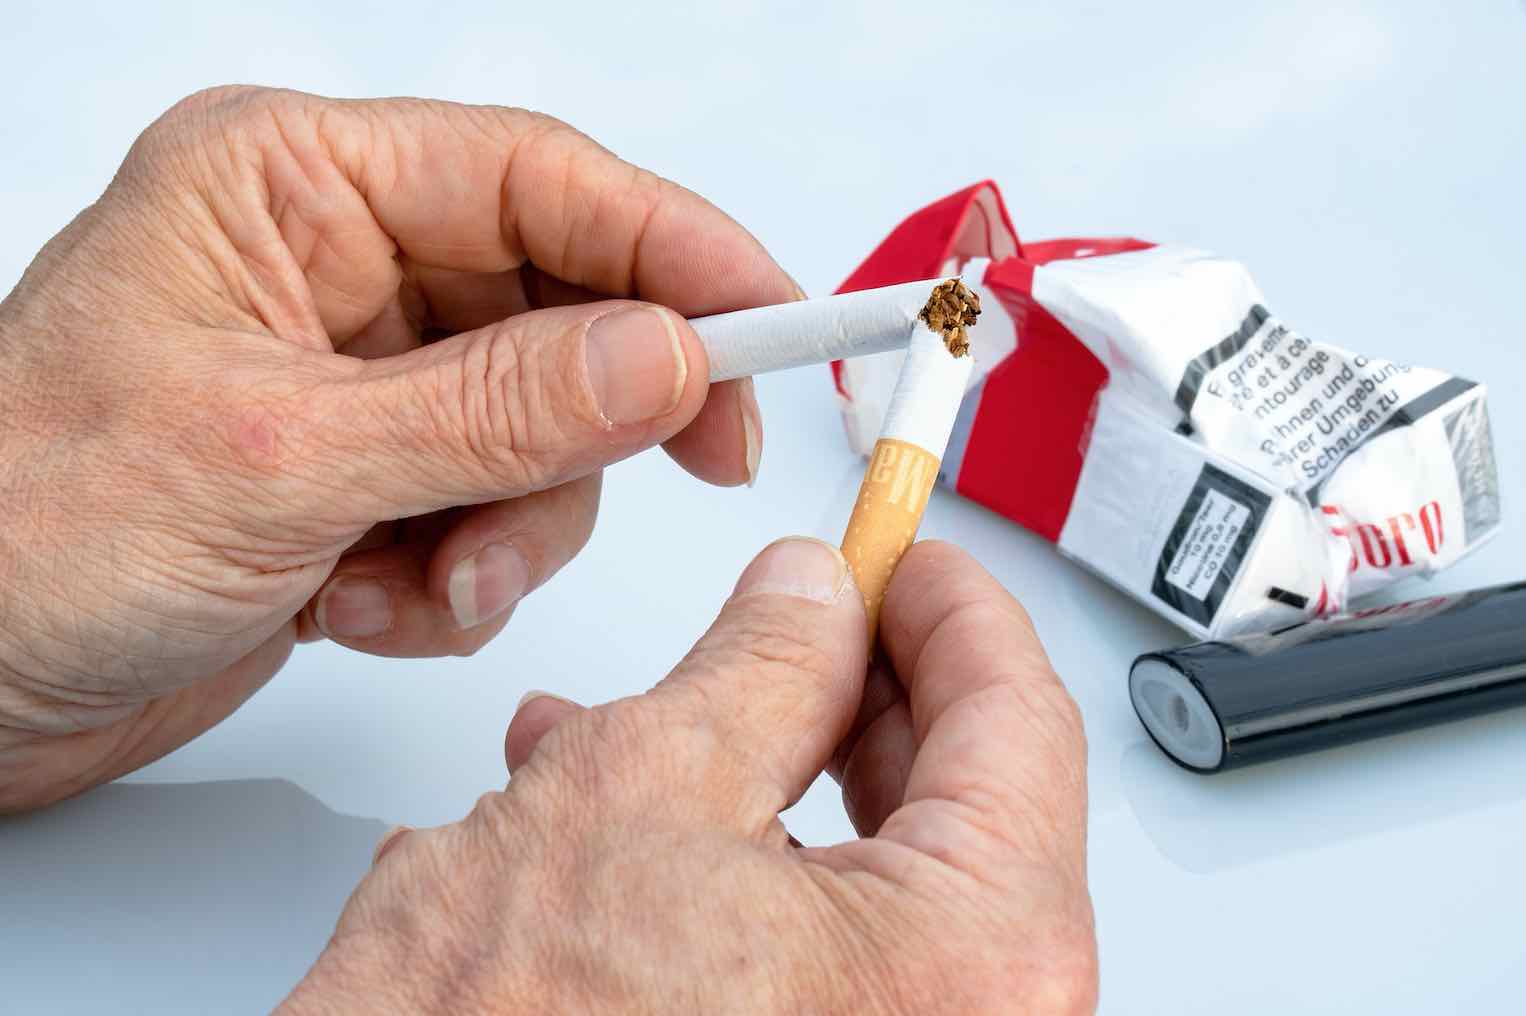 In diesem Land werden Zigaretten verboten – „Wir möchten nichts unterstützen, dass die Gesundheit gefährdet“